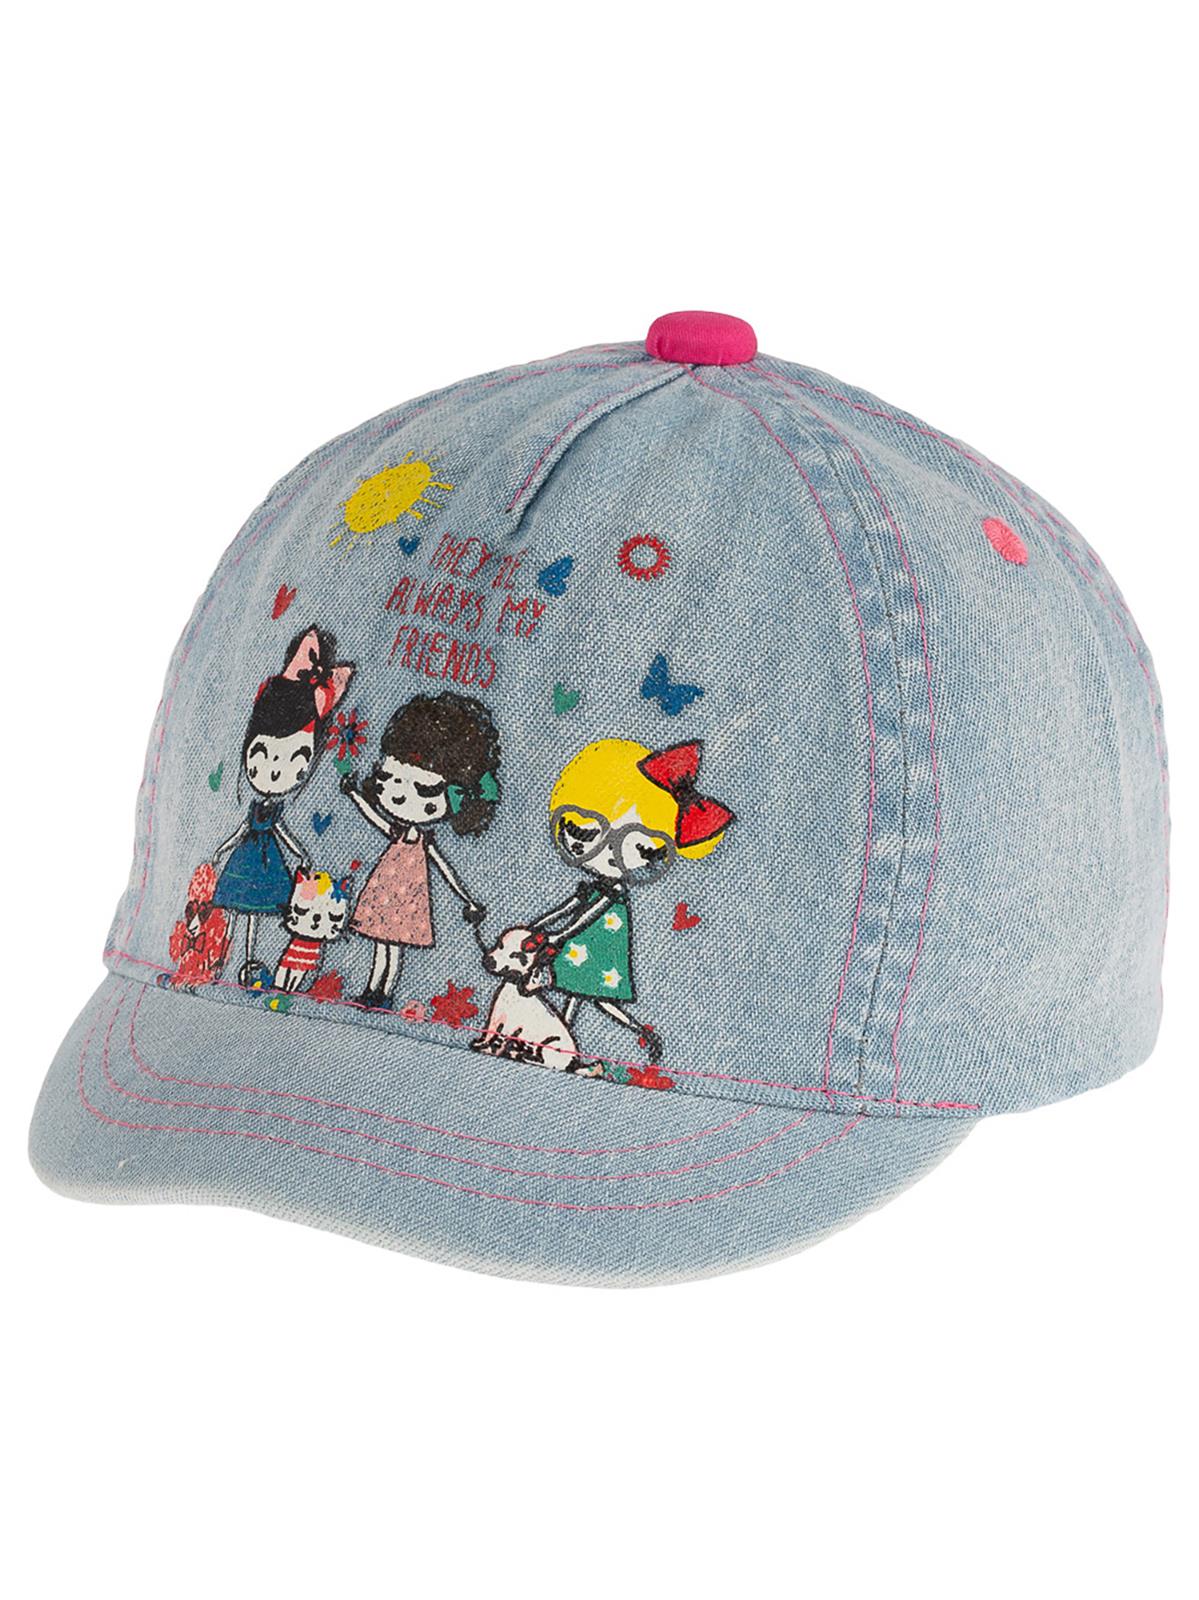 Kitti Kız Bebek Kep Şapka 0-18 Ay Açık Mavi